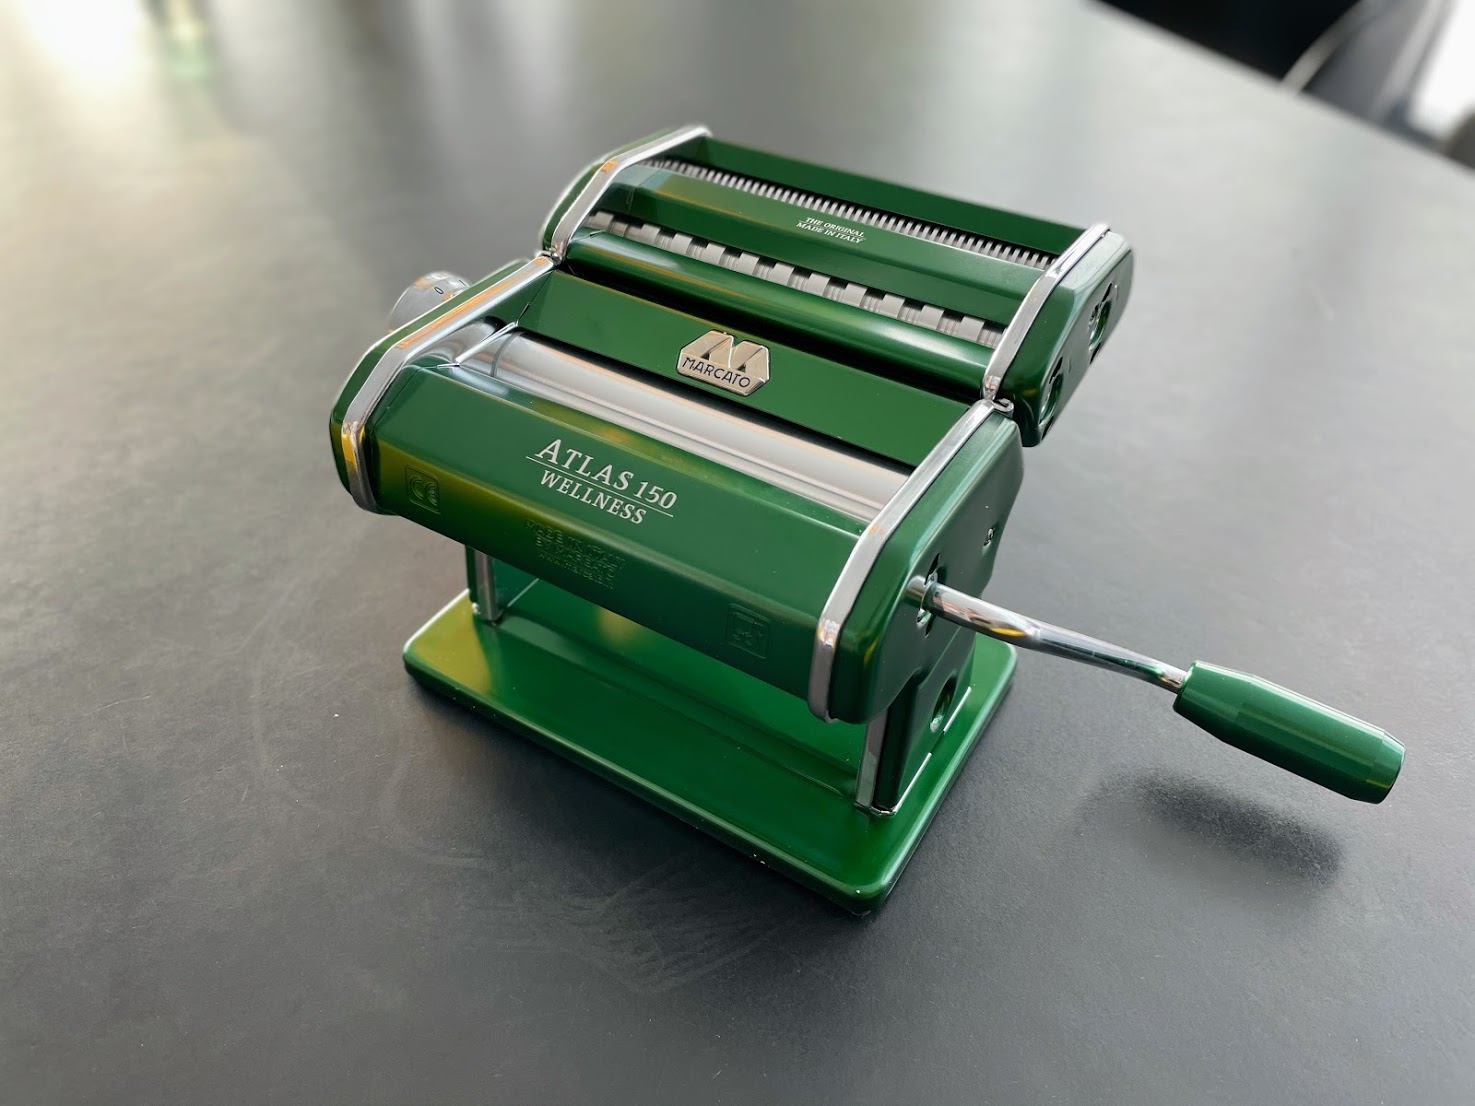 Test af pastamaskine bedste god pasta maskine Marcato Atlas Fettucine Tagliolini 150 kvalitet erfaring med motor tilbehør til